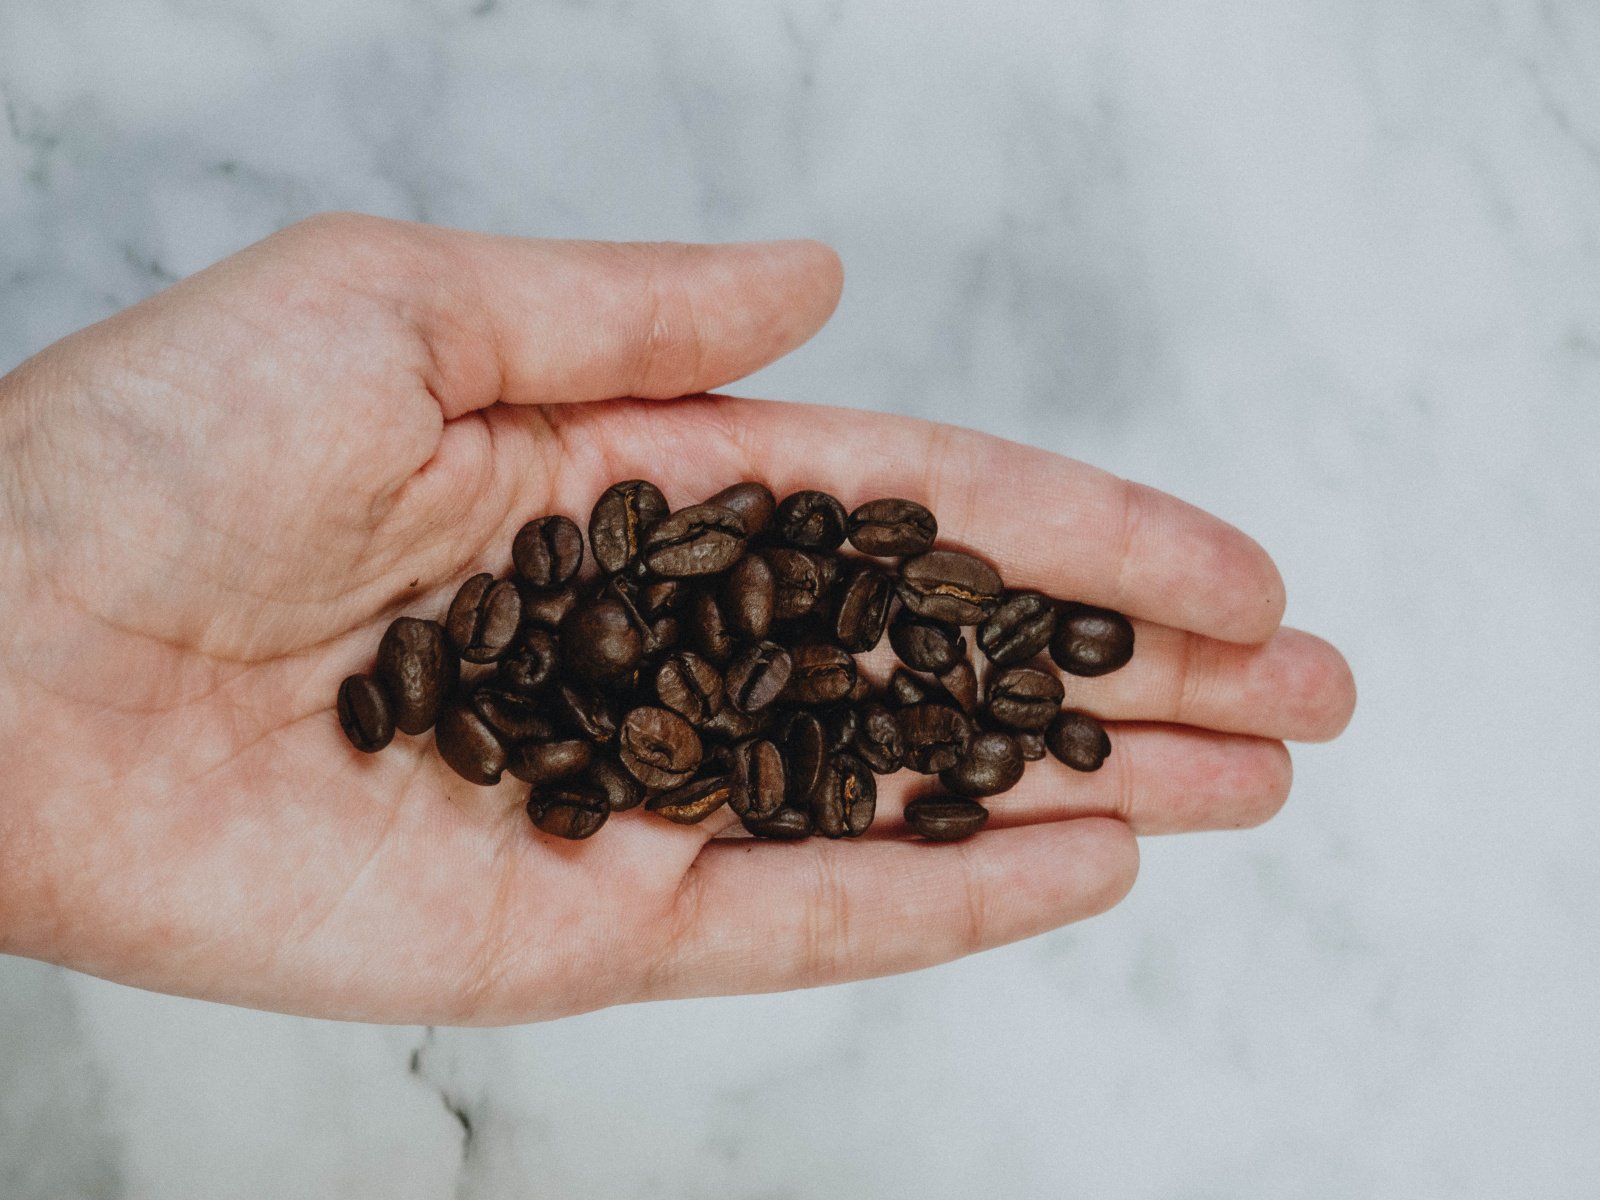 Робуста: низкосортный кофе или продукт будущего?